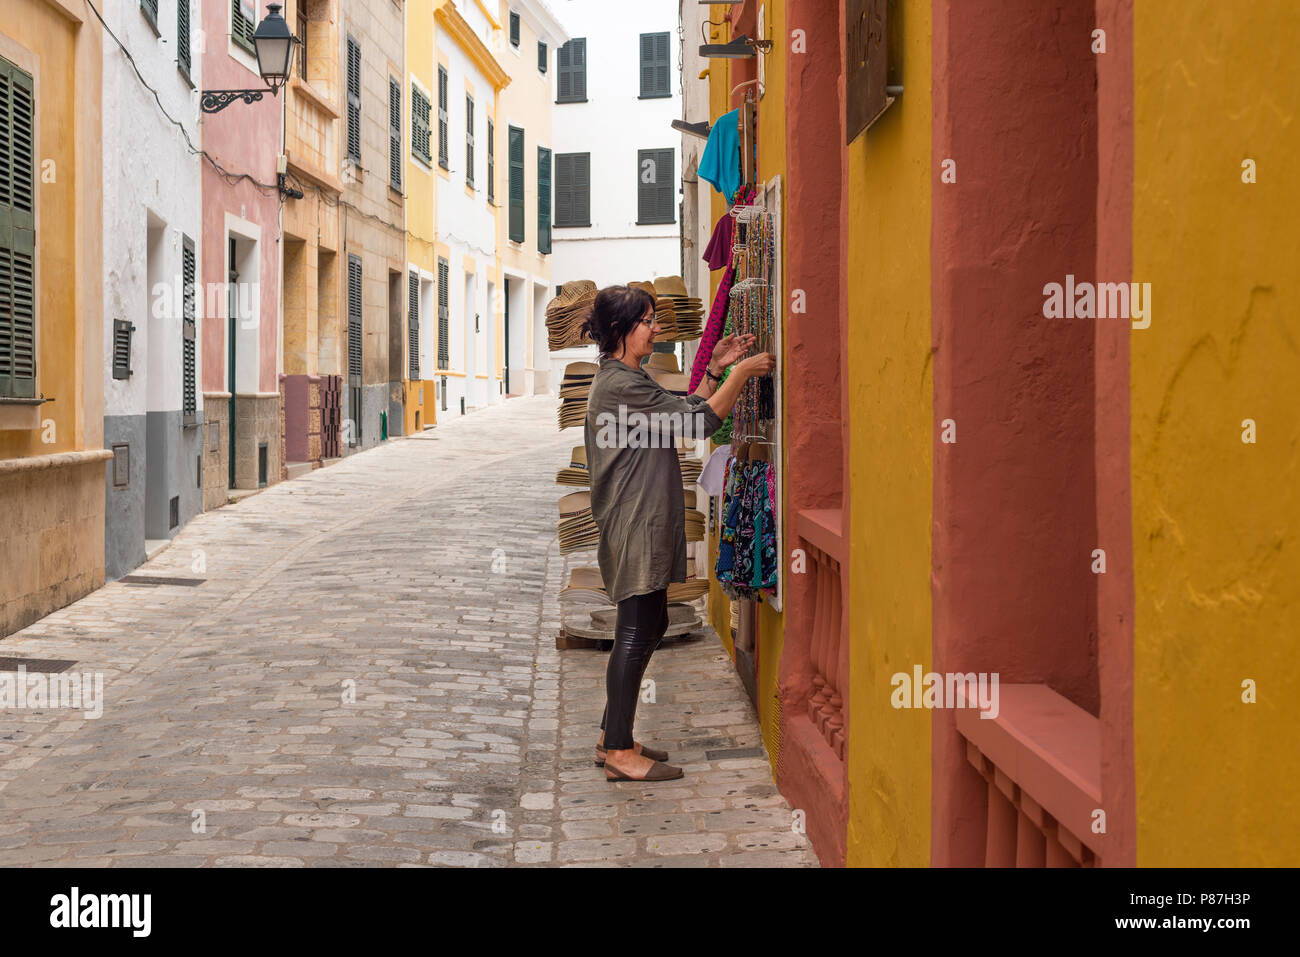 A woman shopping for souvenirs in Ciutadella, Menorca Stock Photo